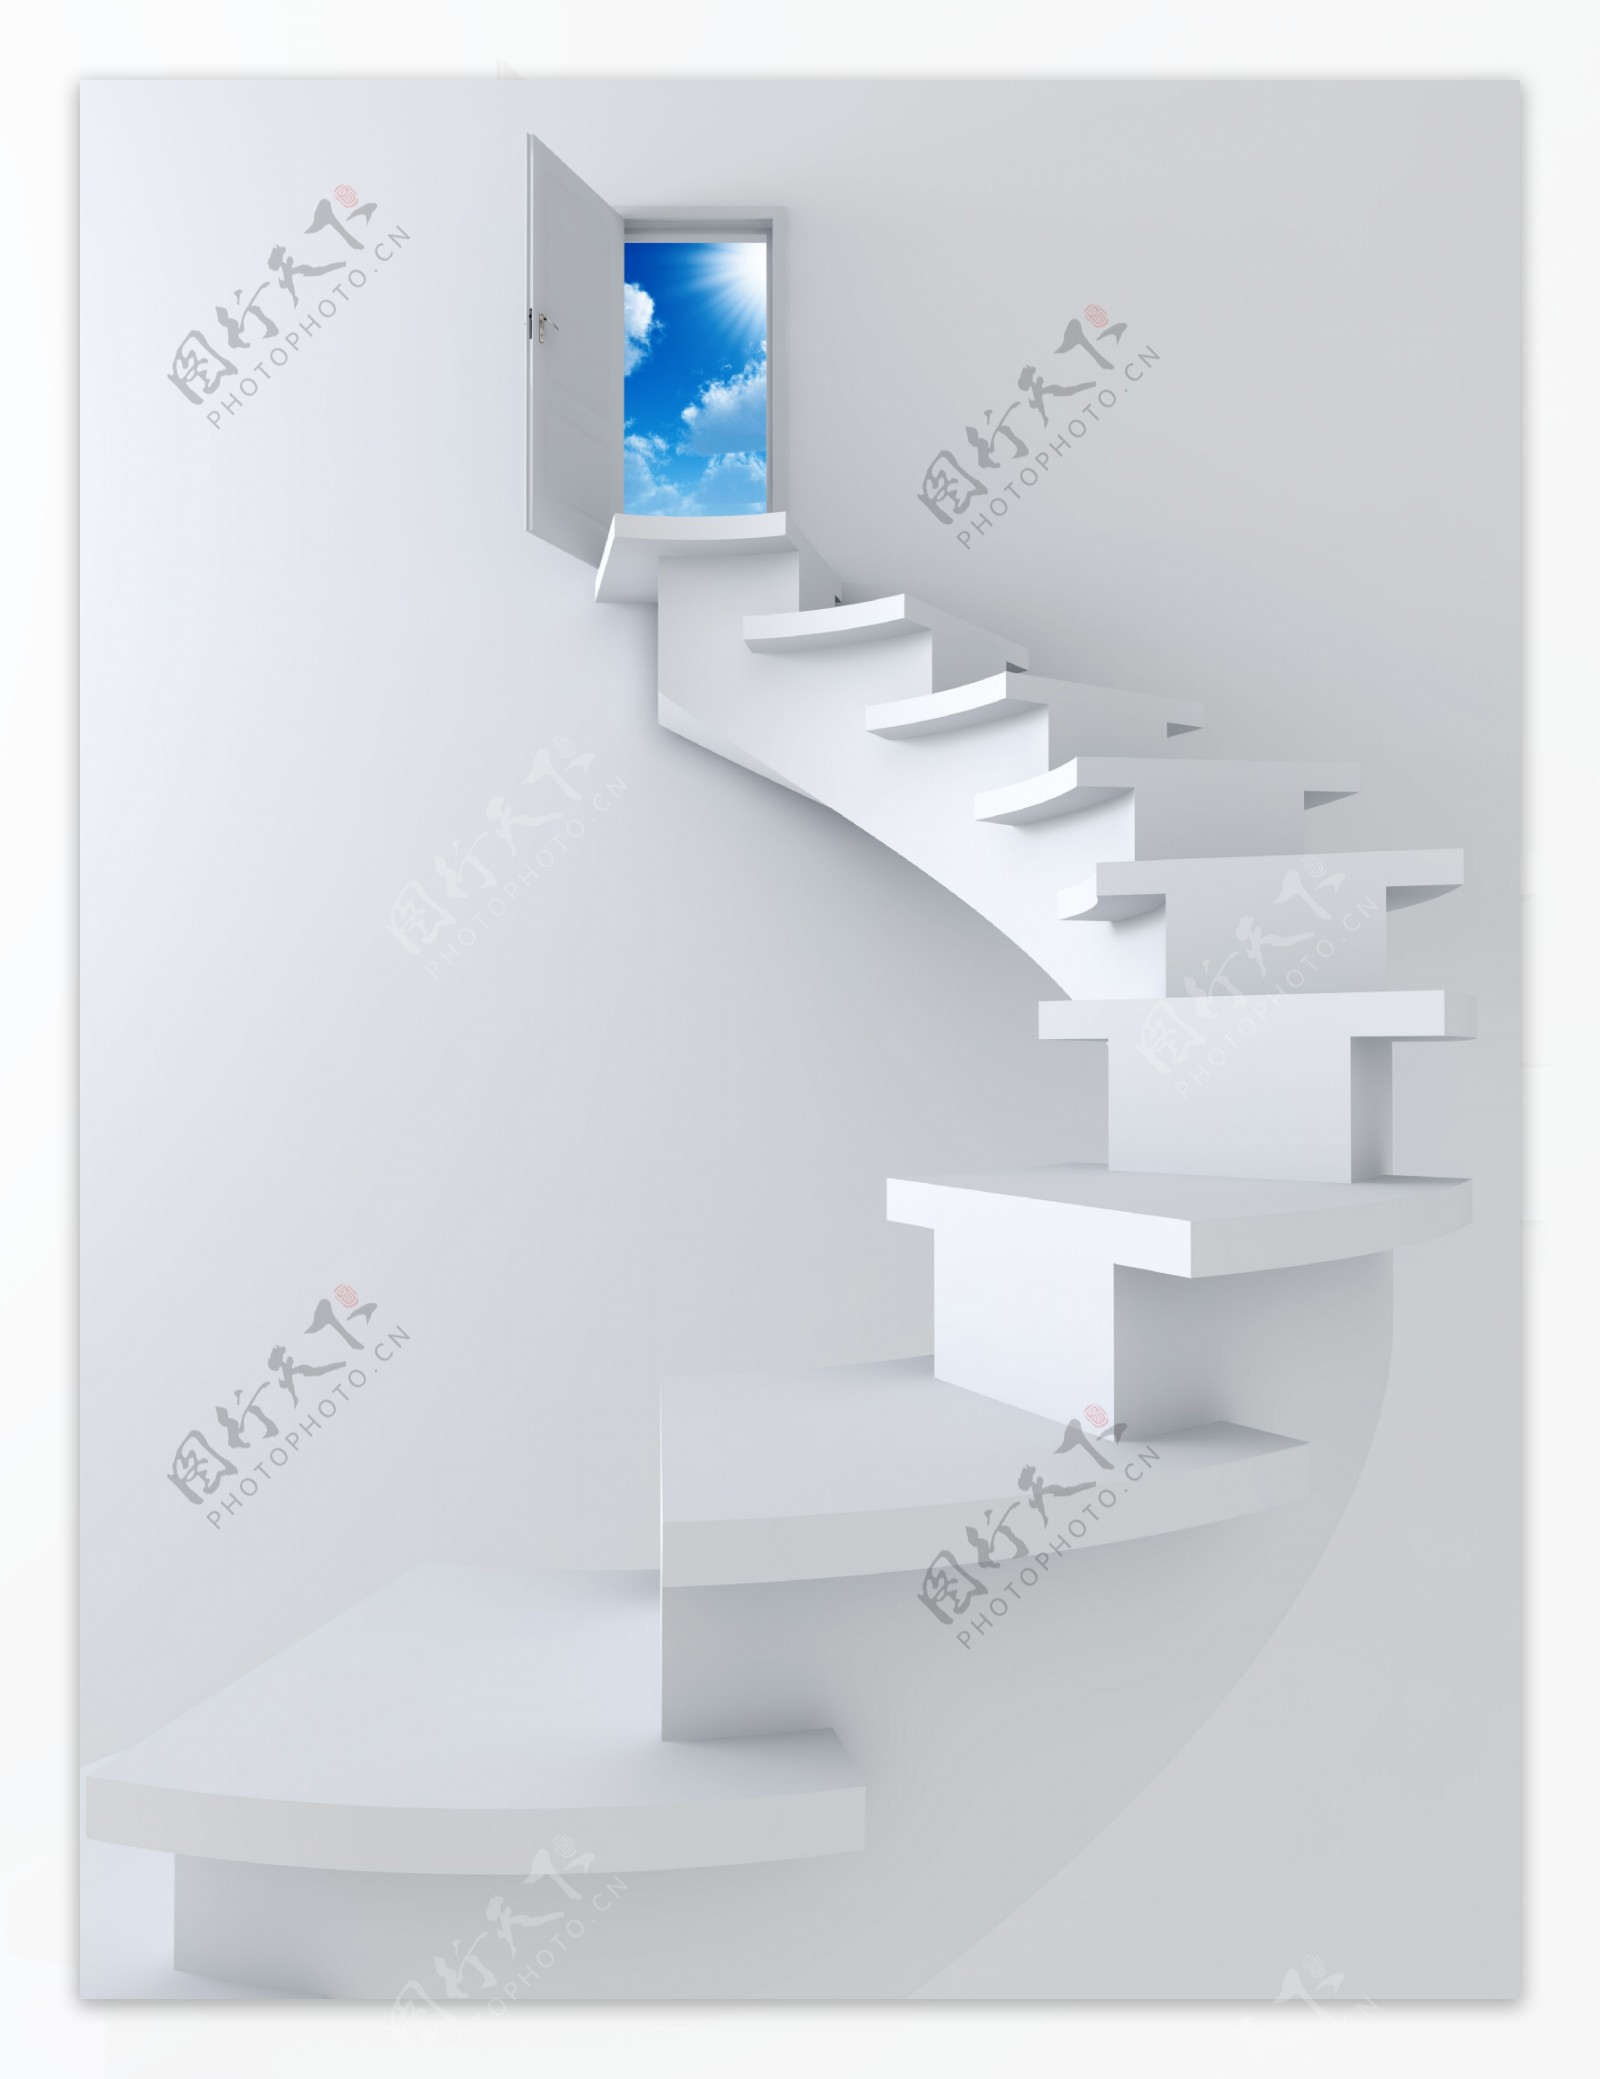 3D楼梯图片